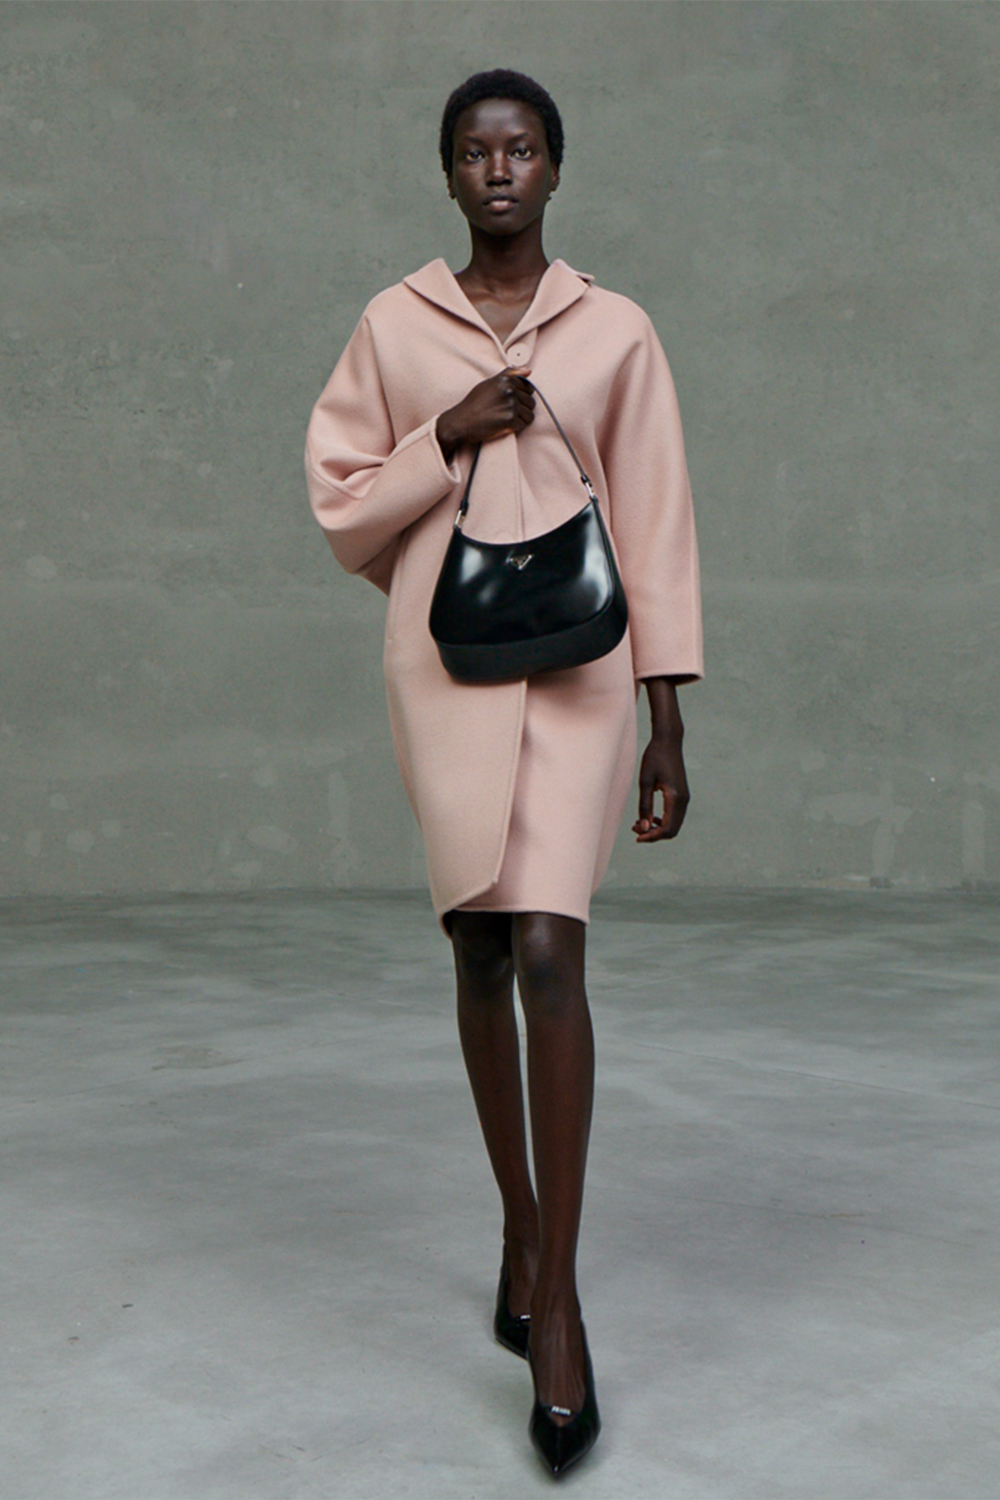 Neo classics 🖤 @prada outfit featuring the new Cleo bag 🎱 #Prada  #PradaCleo #PradaHoliday20 #PradaPartner